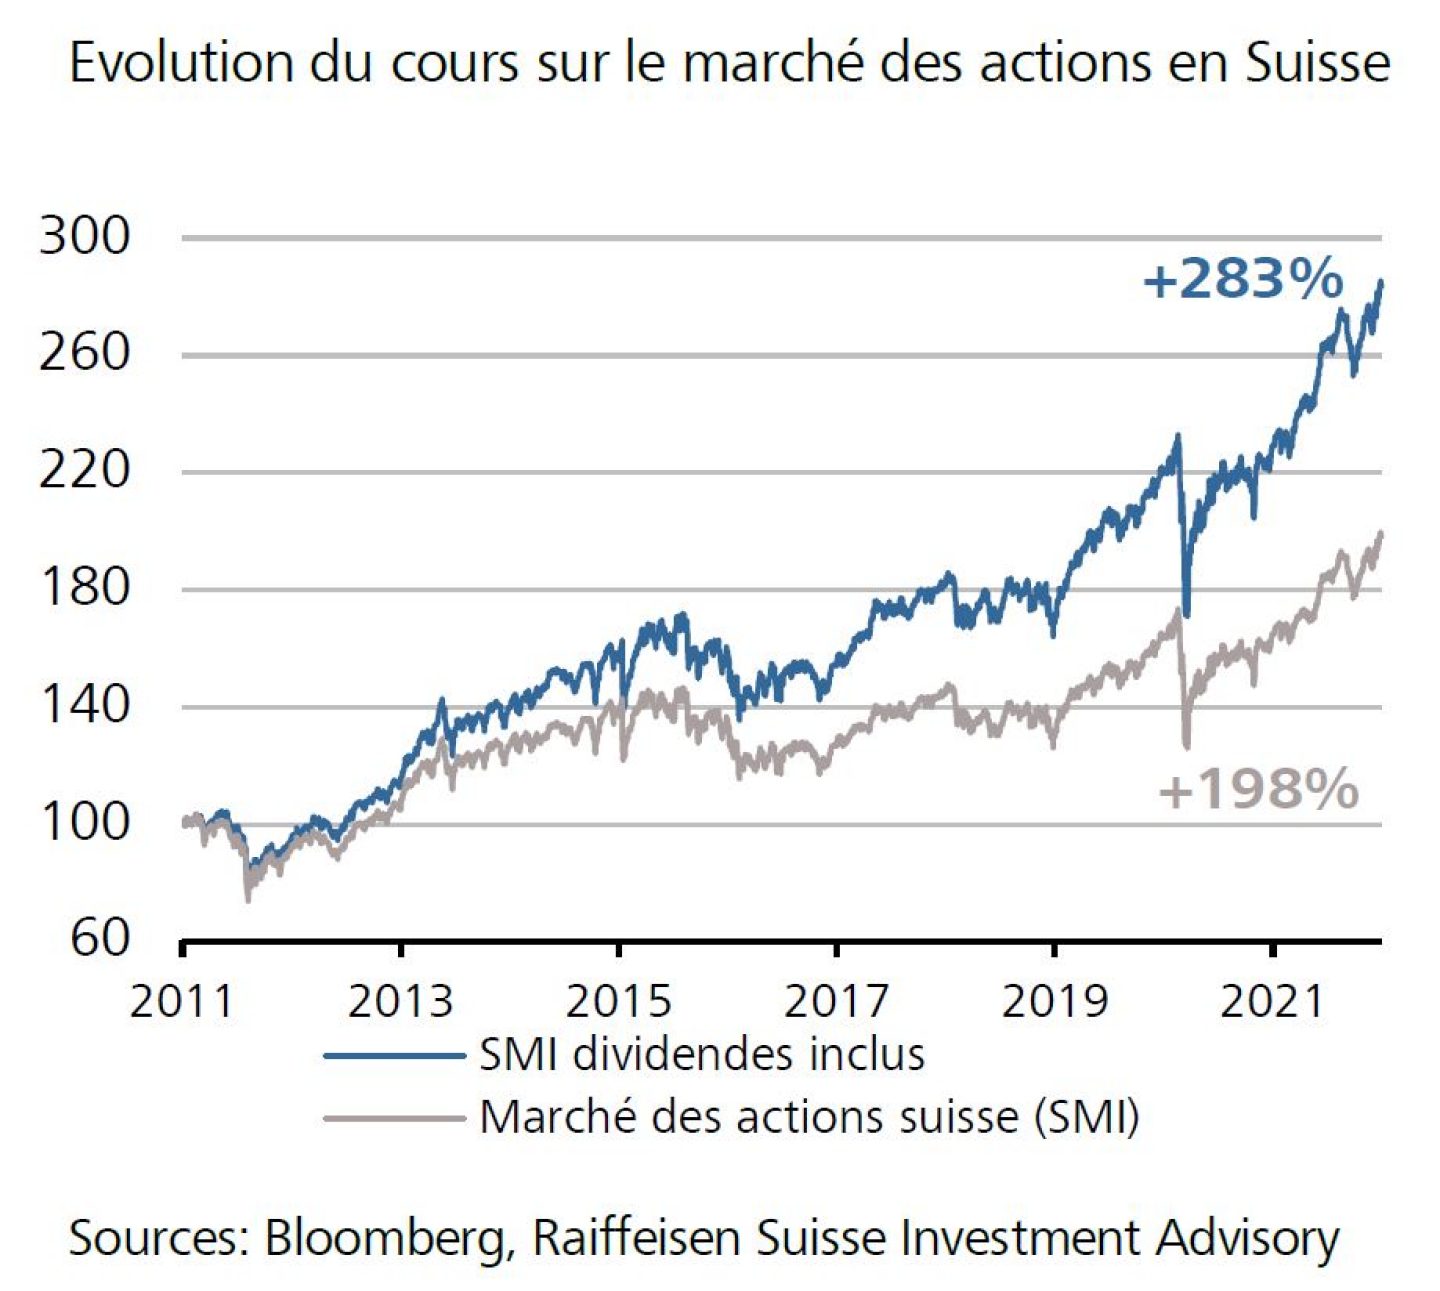 Evolution du cours sur le marché des actions suisse 